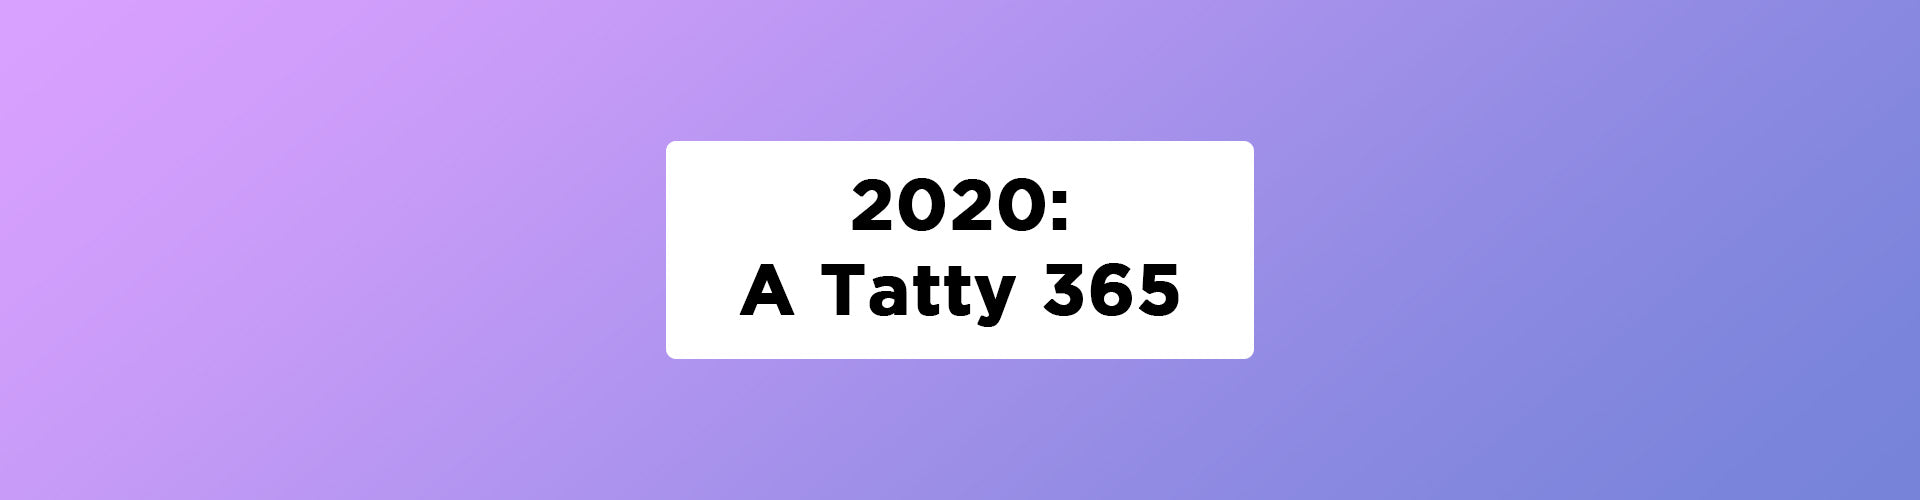 A Tatty 365: Gilly's Tatty Treasures